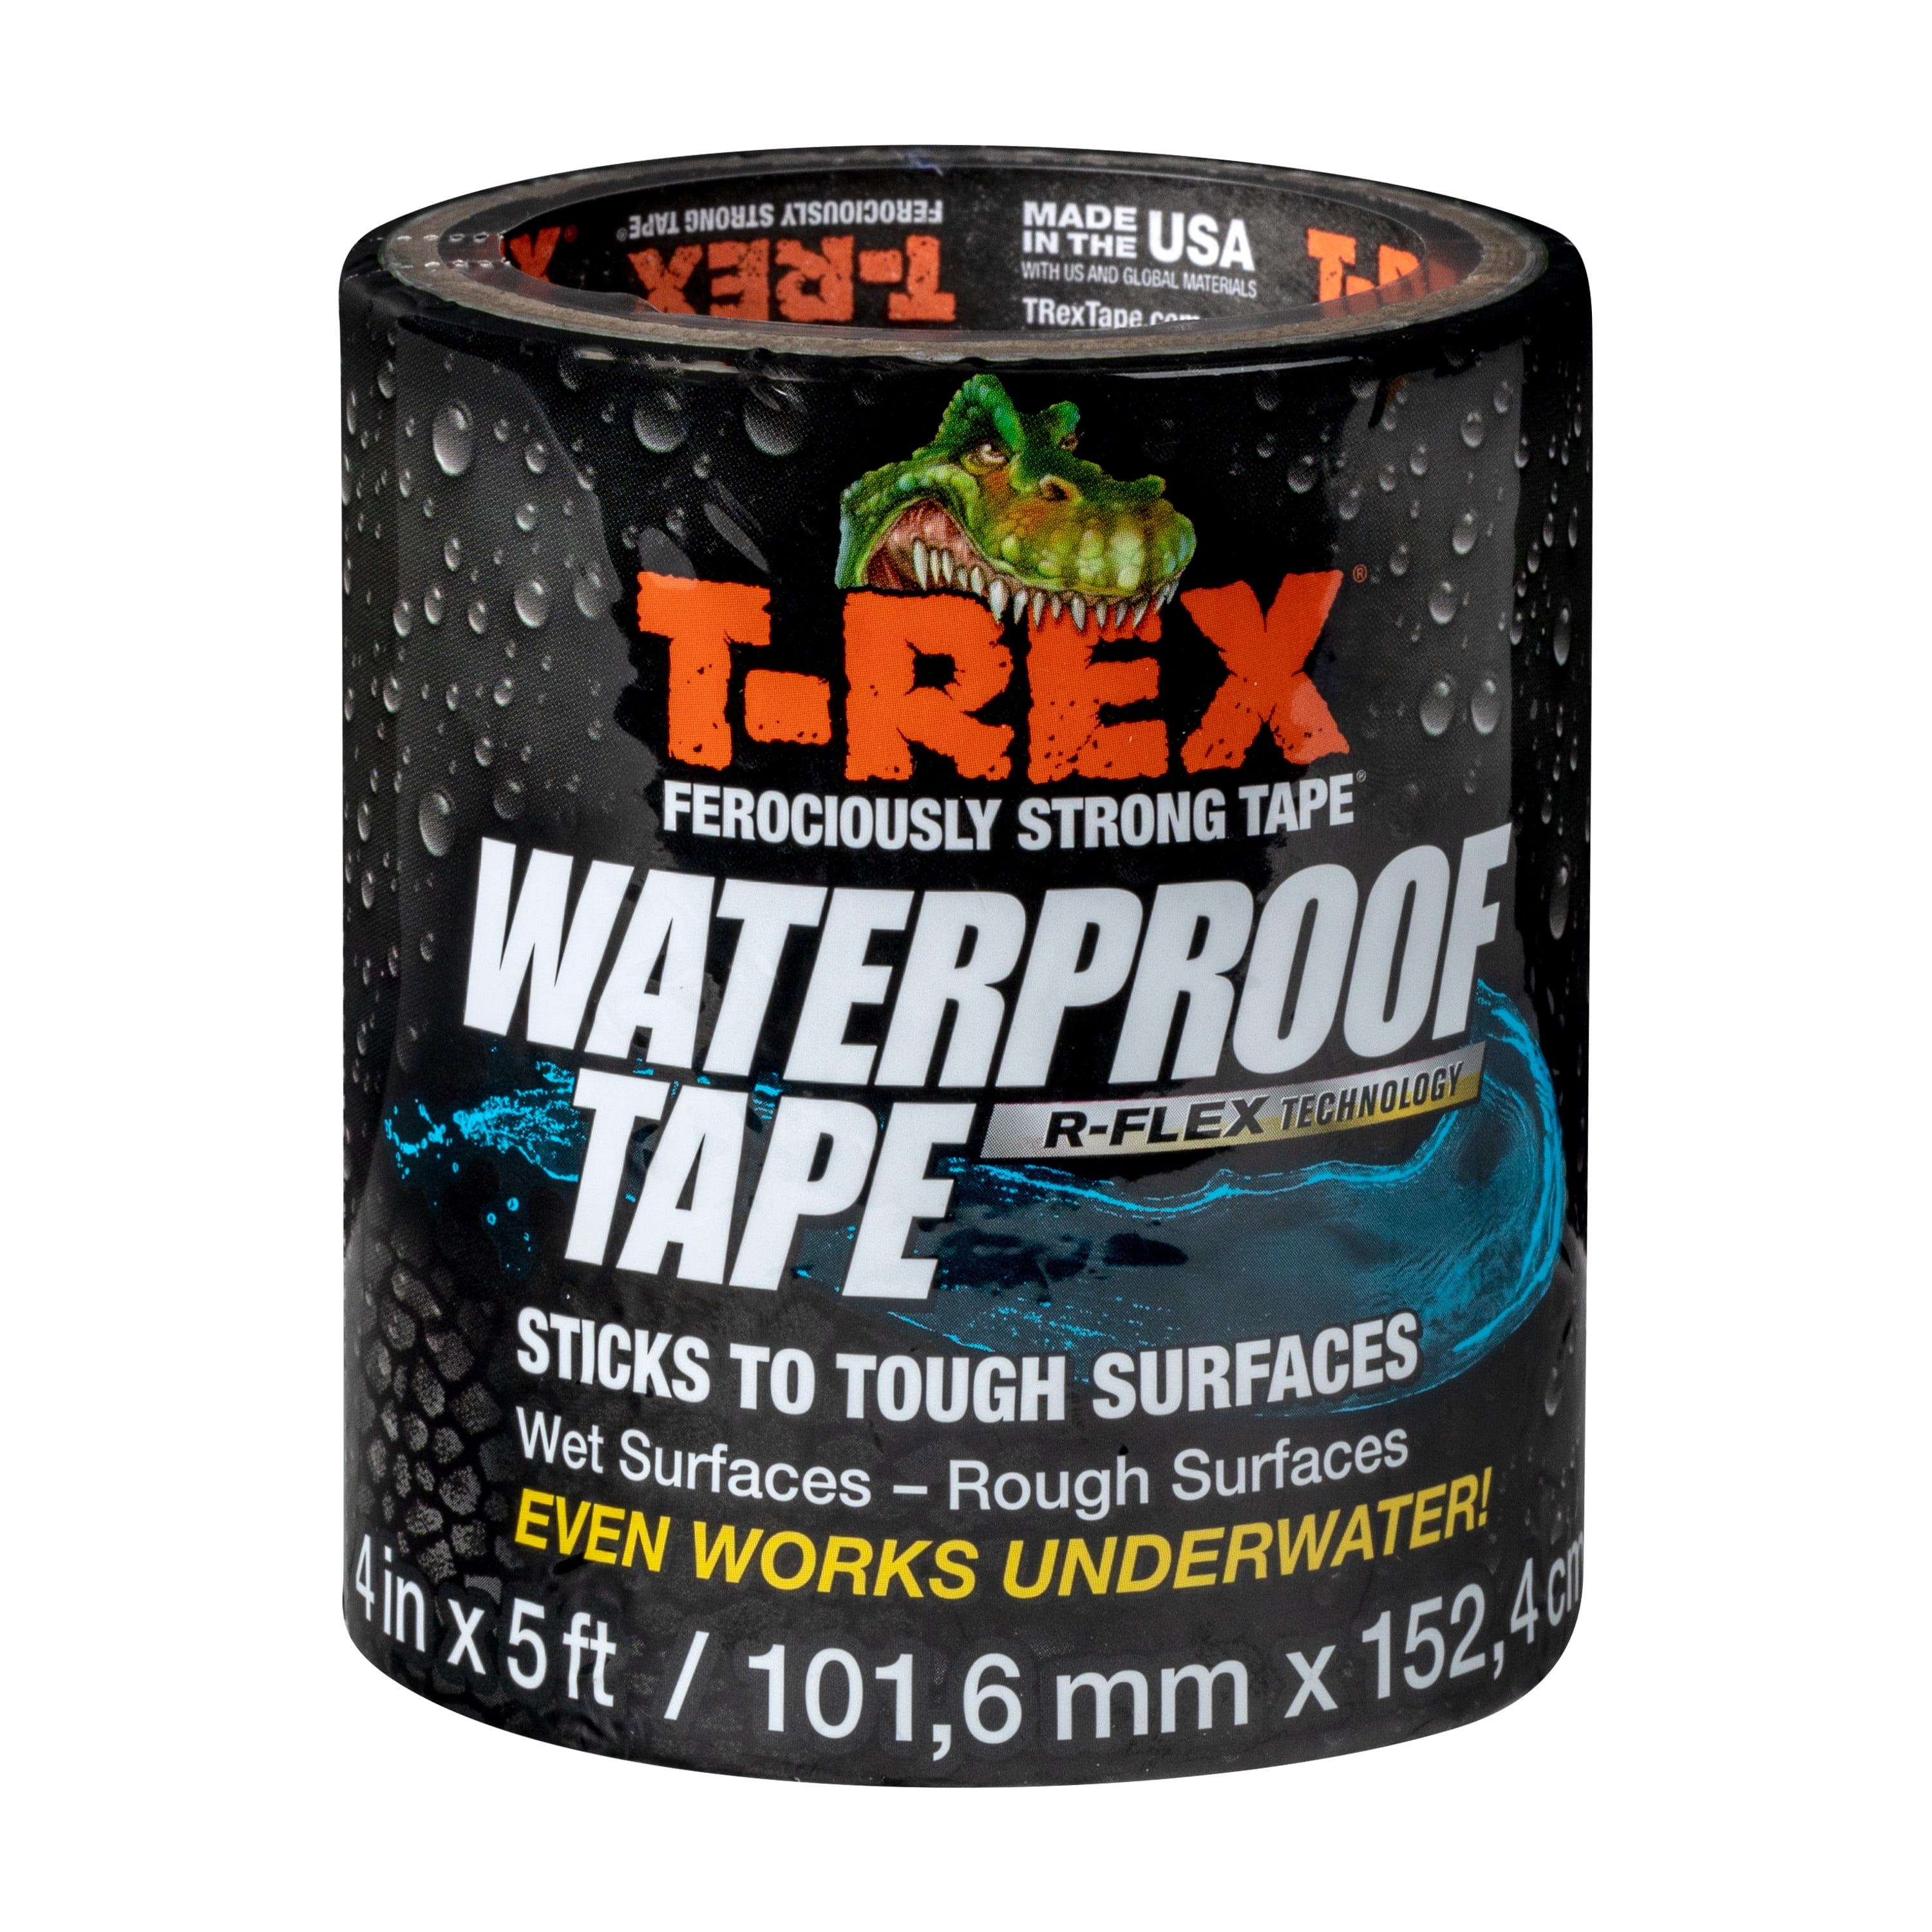 FLEX TAPE Waterproof Tape, Black, 4-In. x 5-Ft.